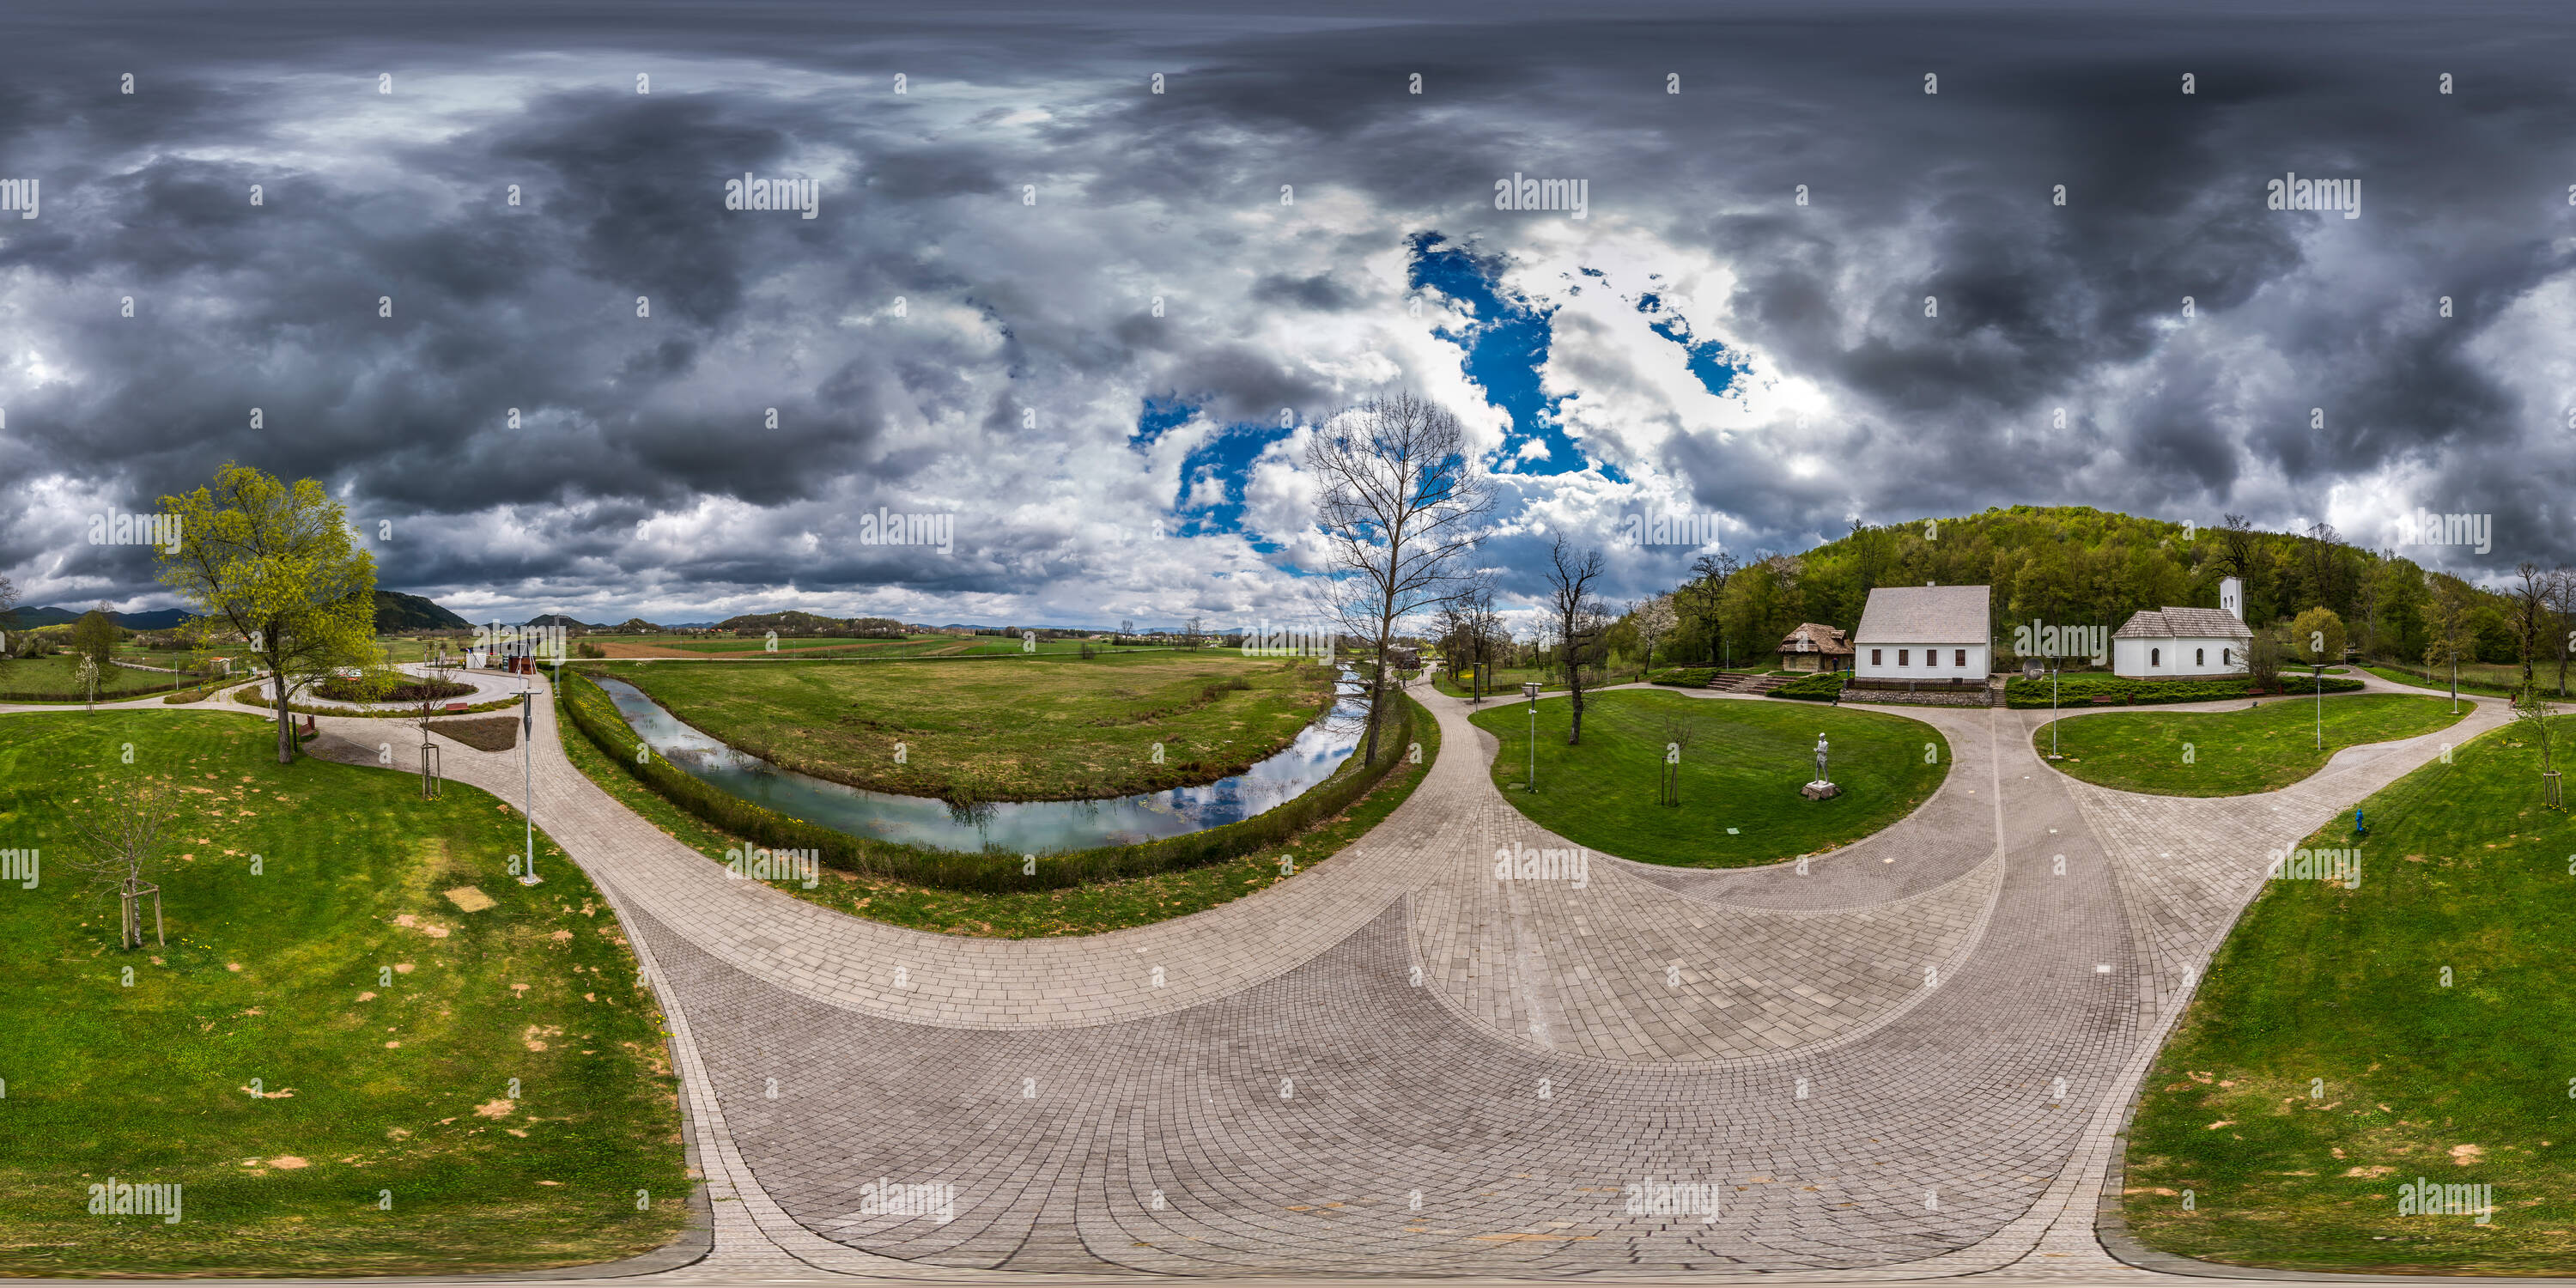 360 Grad Panorama Ansicht von Nikola Tesla Memorial Center, Smiljan, Kroatien, 2016.